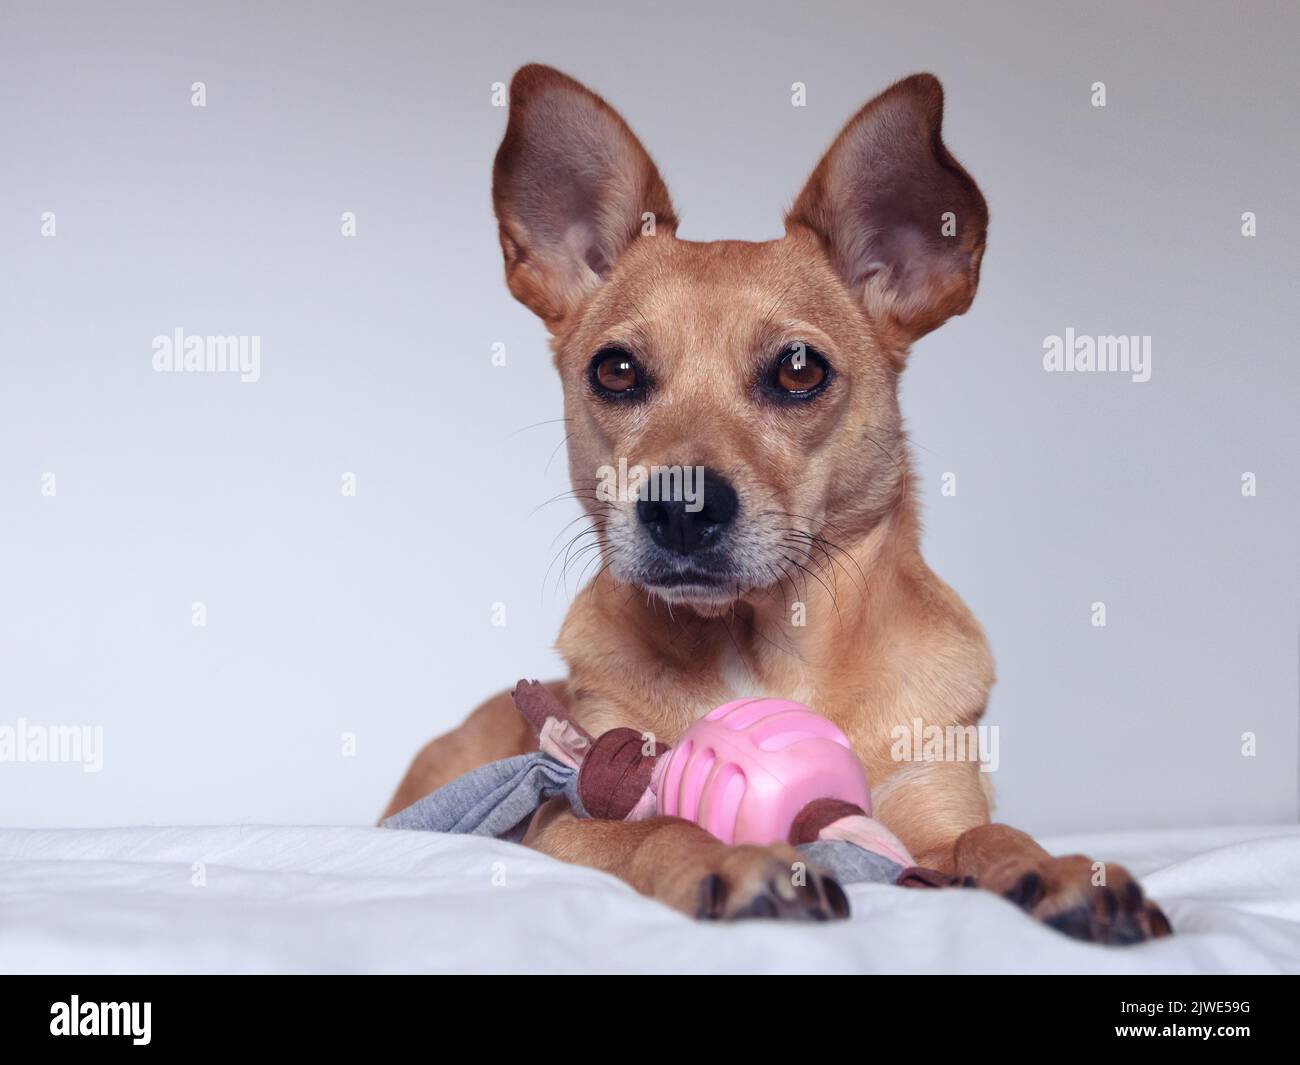 Un joli chien brun de race mixte avec de grandes oreilles pointues et de beaux yeux assis sur un lit blanc avec un jouet rose. PET isolé sur fond blanc Banque D'Images